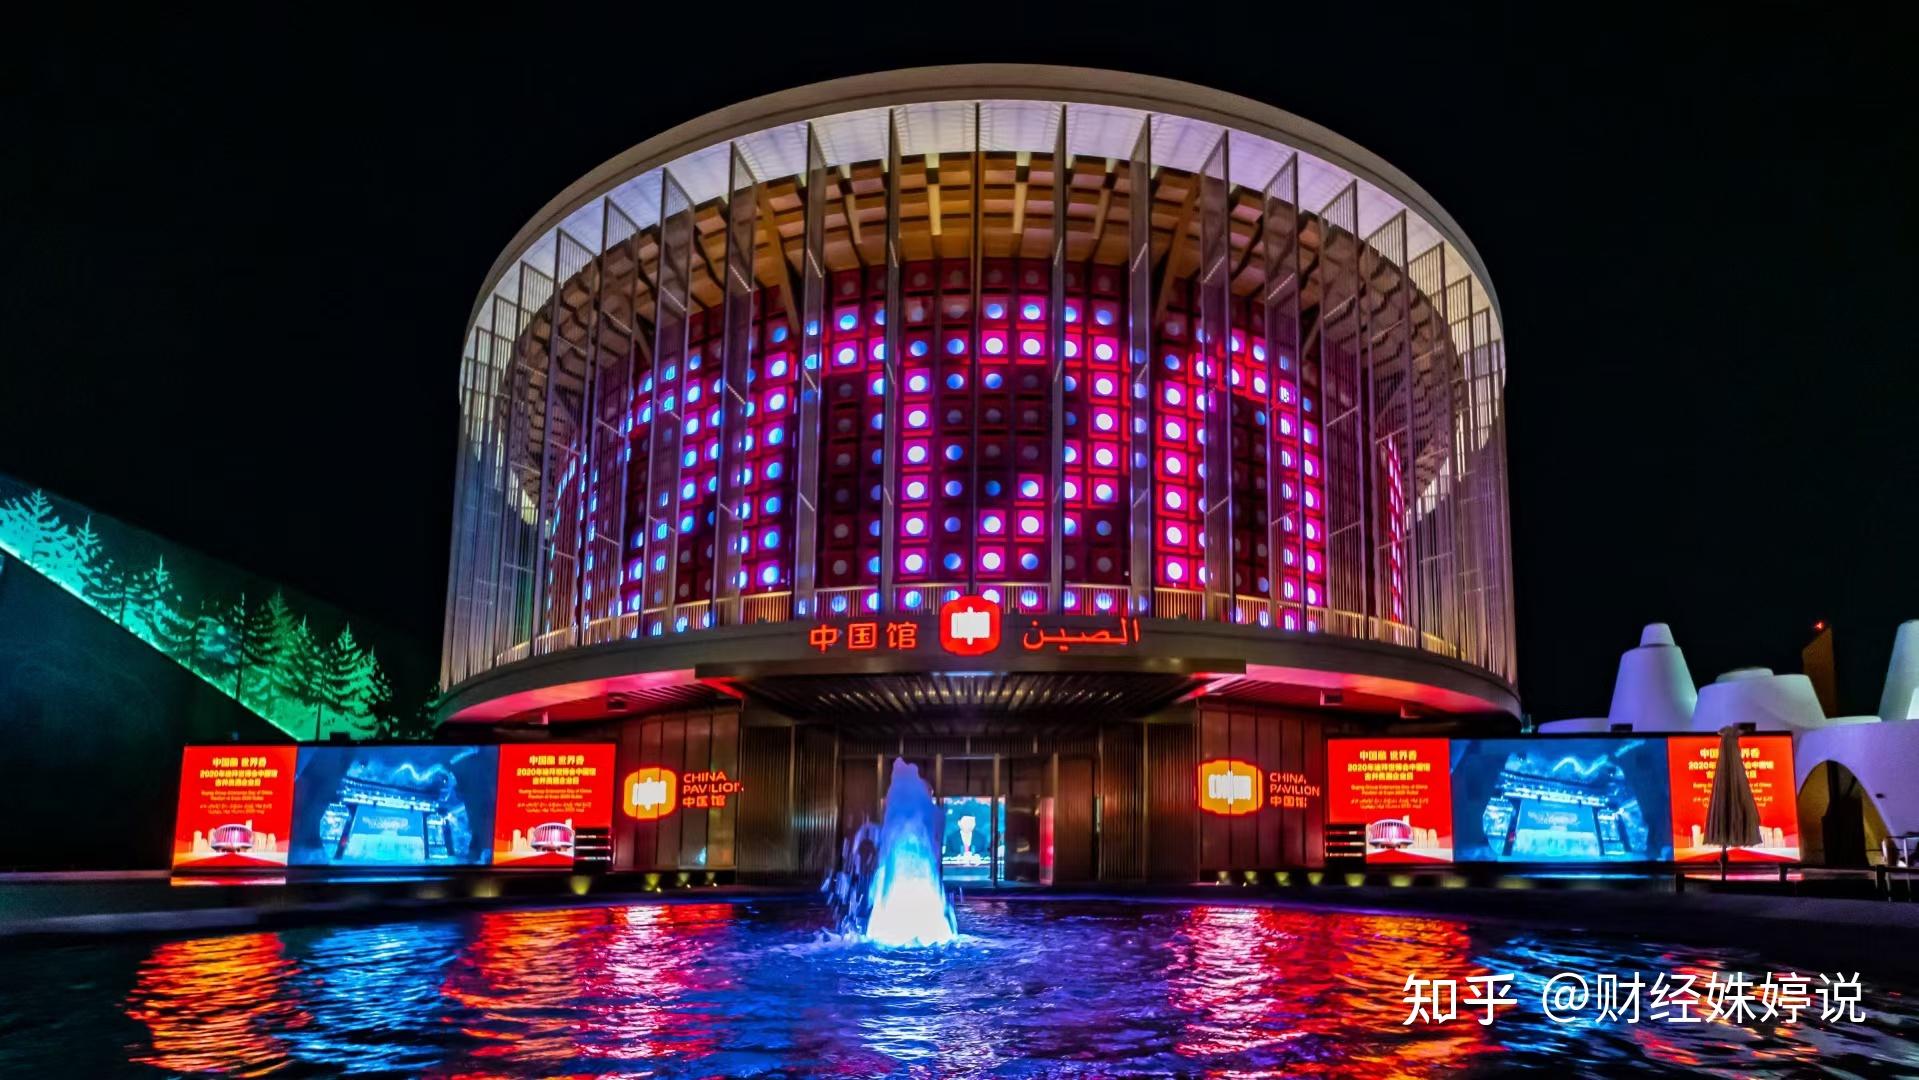 迪拜世博会,中国馆成为最大亮点 